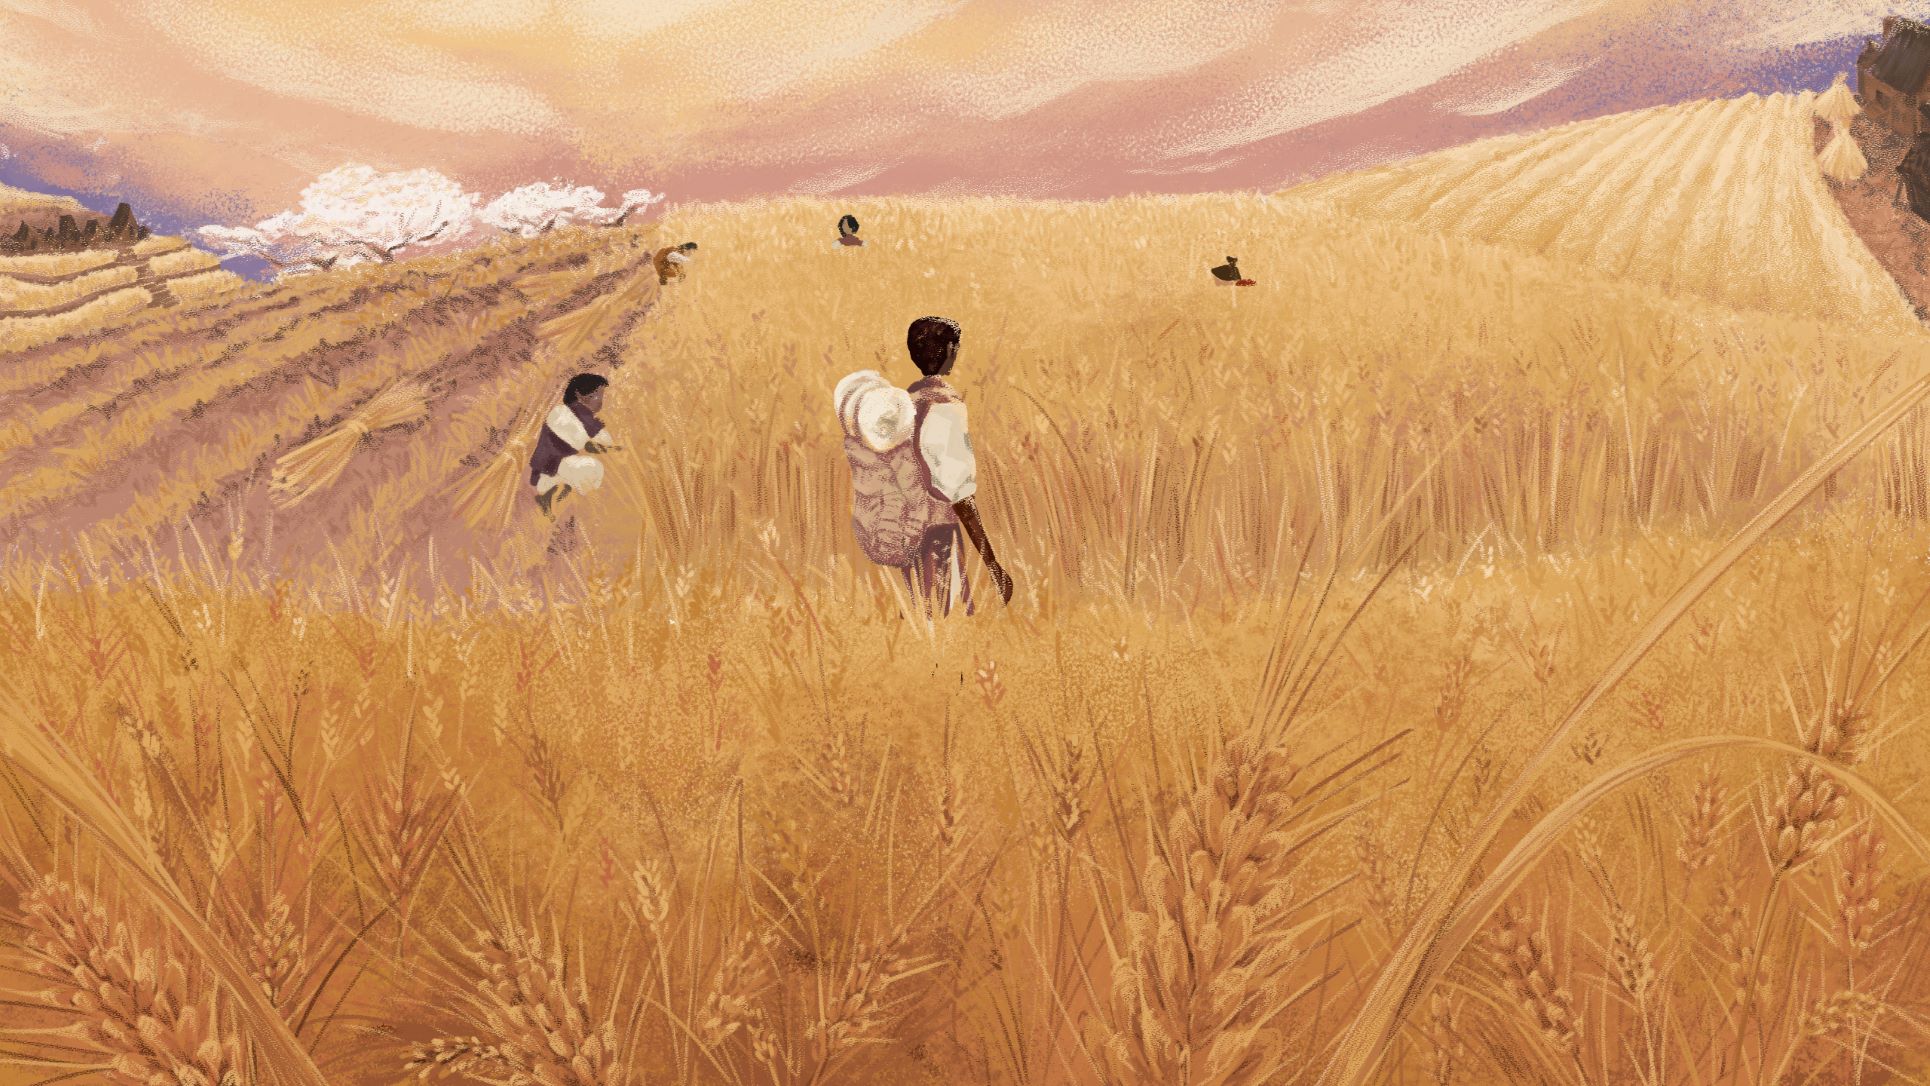 Wheat Fields in Karhide - Key Location Illustration